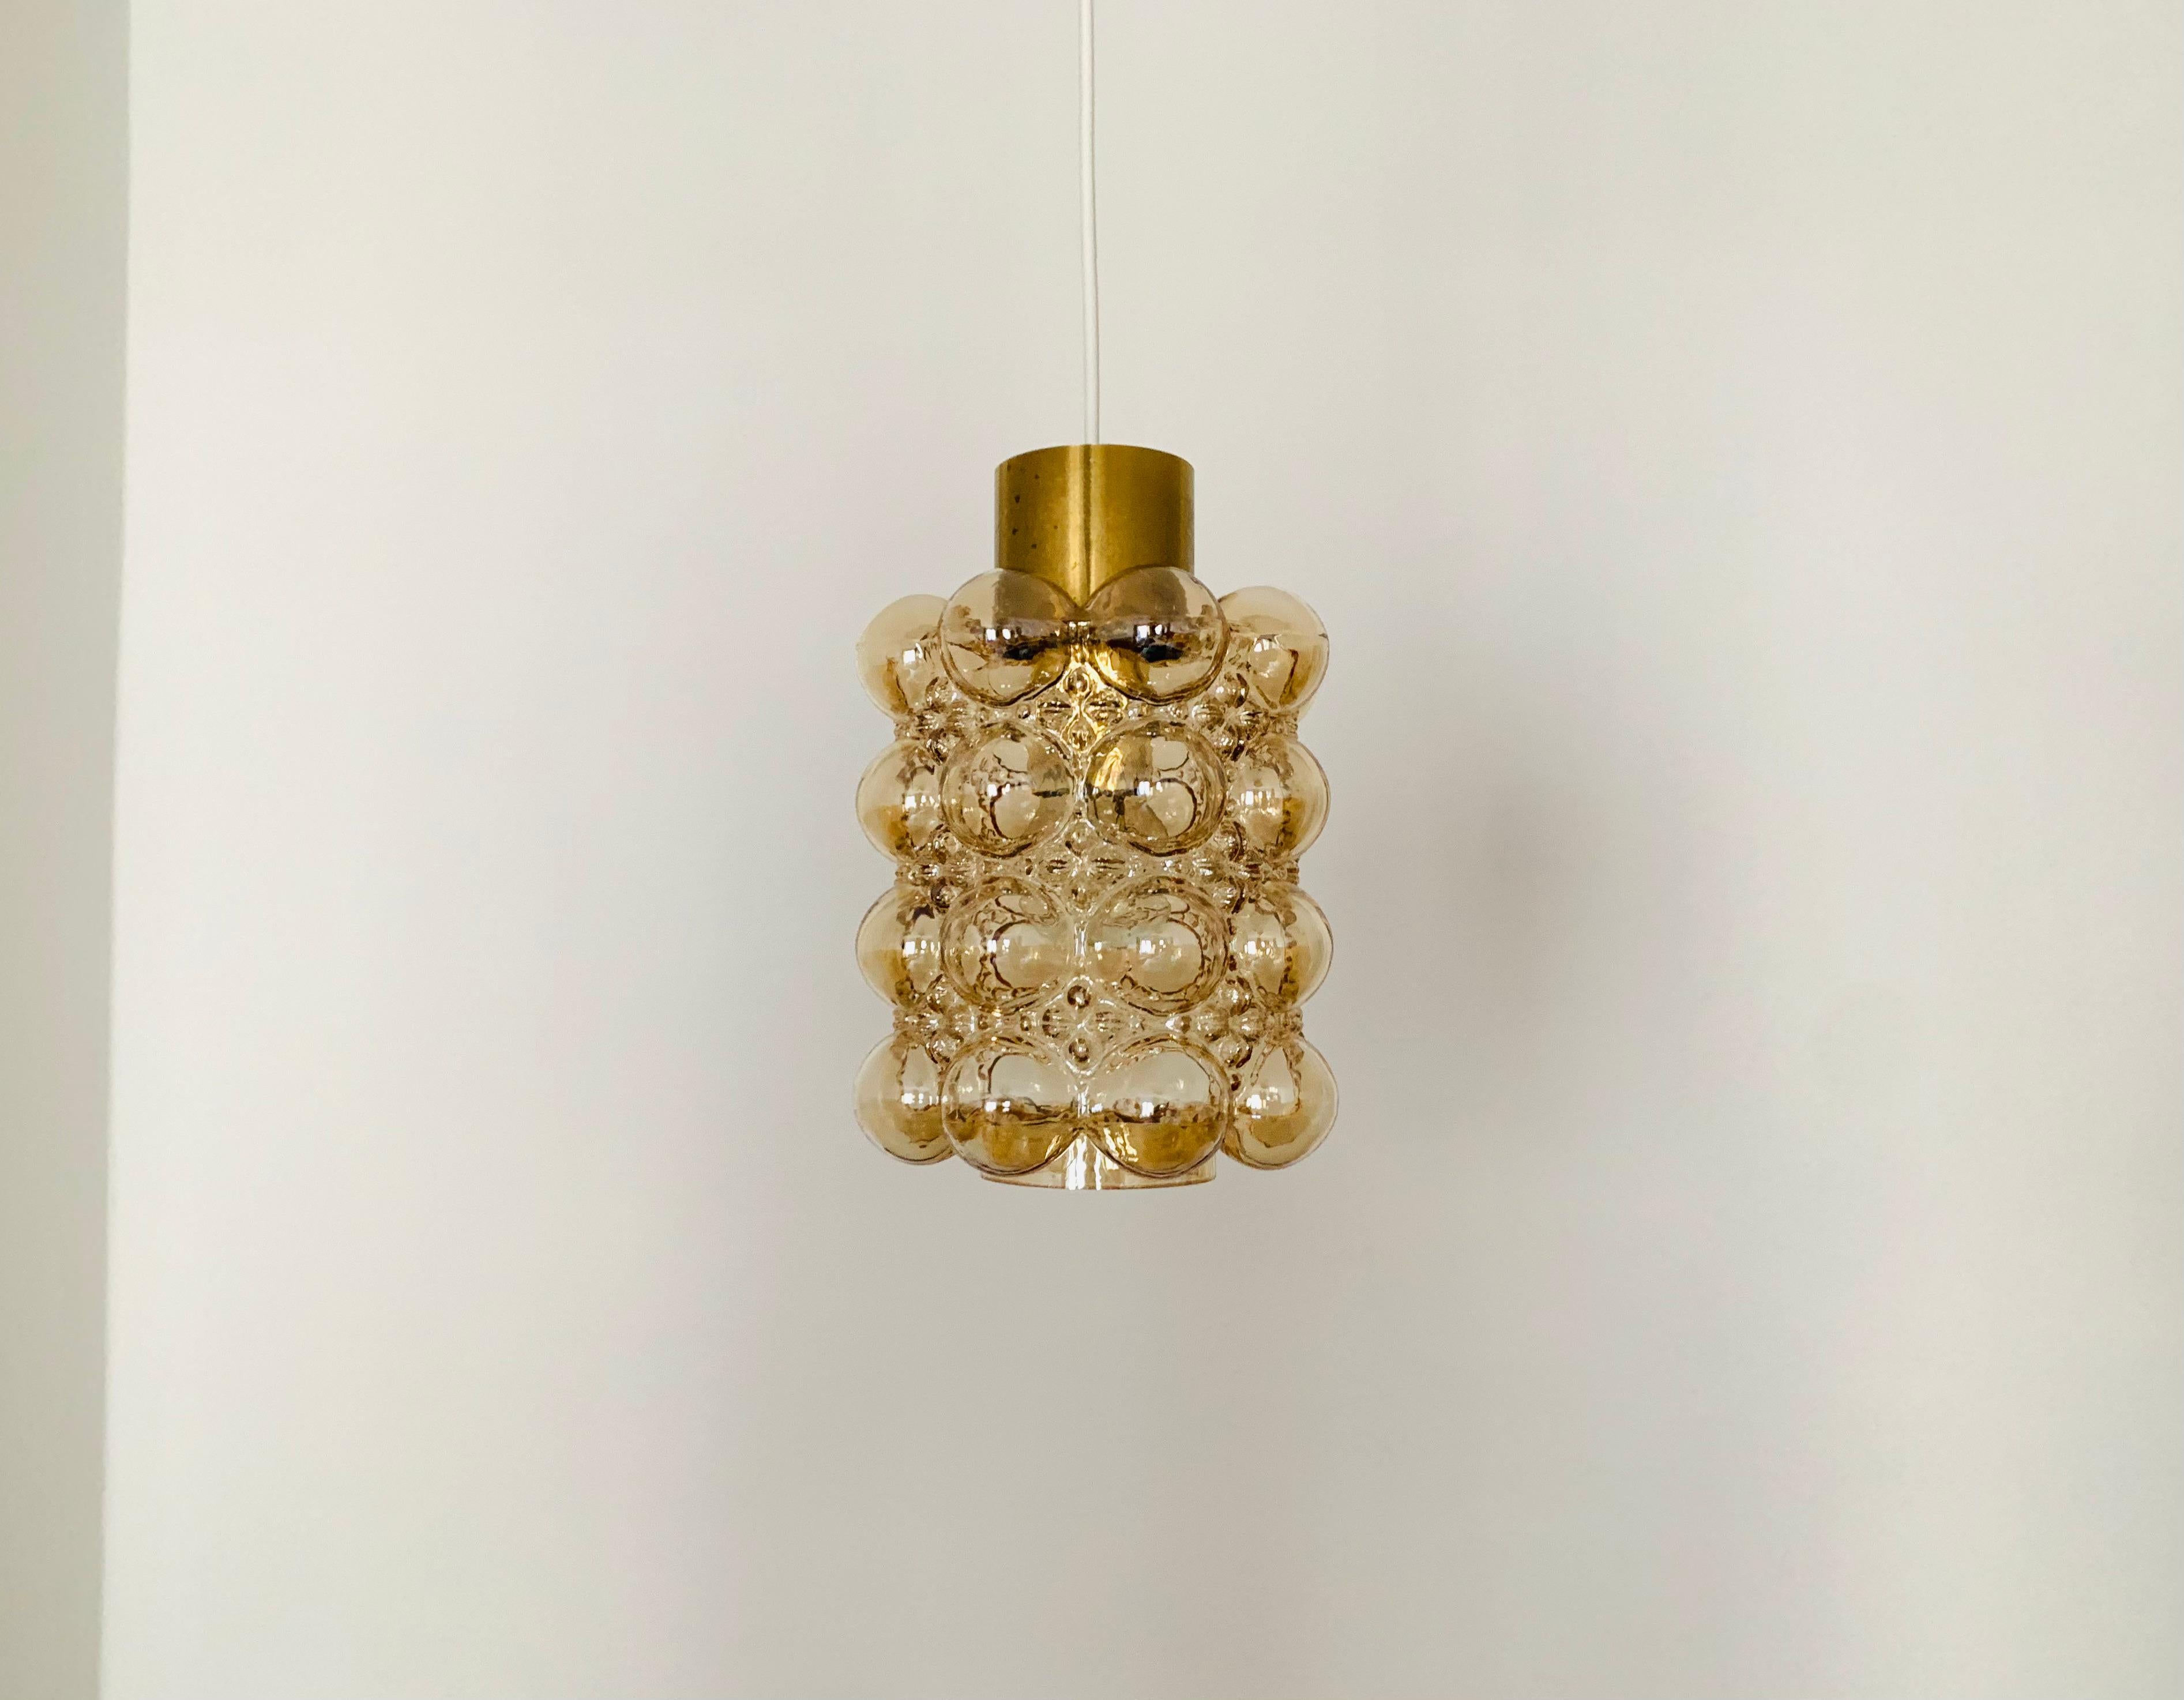 Sehr schöne Hängeleuchte aus Blasenglas von Helena Tynell für die Limburger Glashütte.
Die Lampe verbreitet ein spektakuläres Lichtspiel im Raum und verzaubert mit ihrer Ausstrahlung.
Hochwertige Verarbeitung und außergewöhnliches